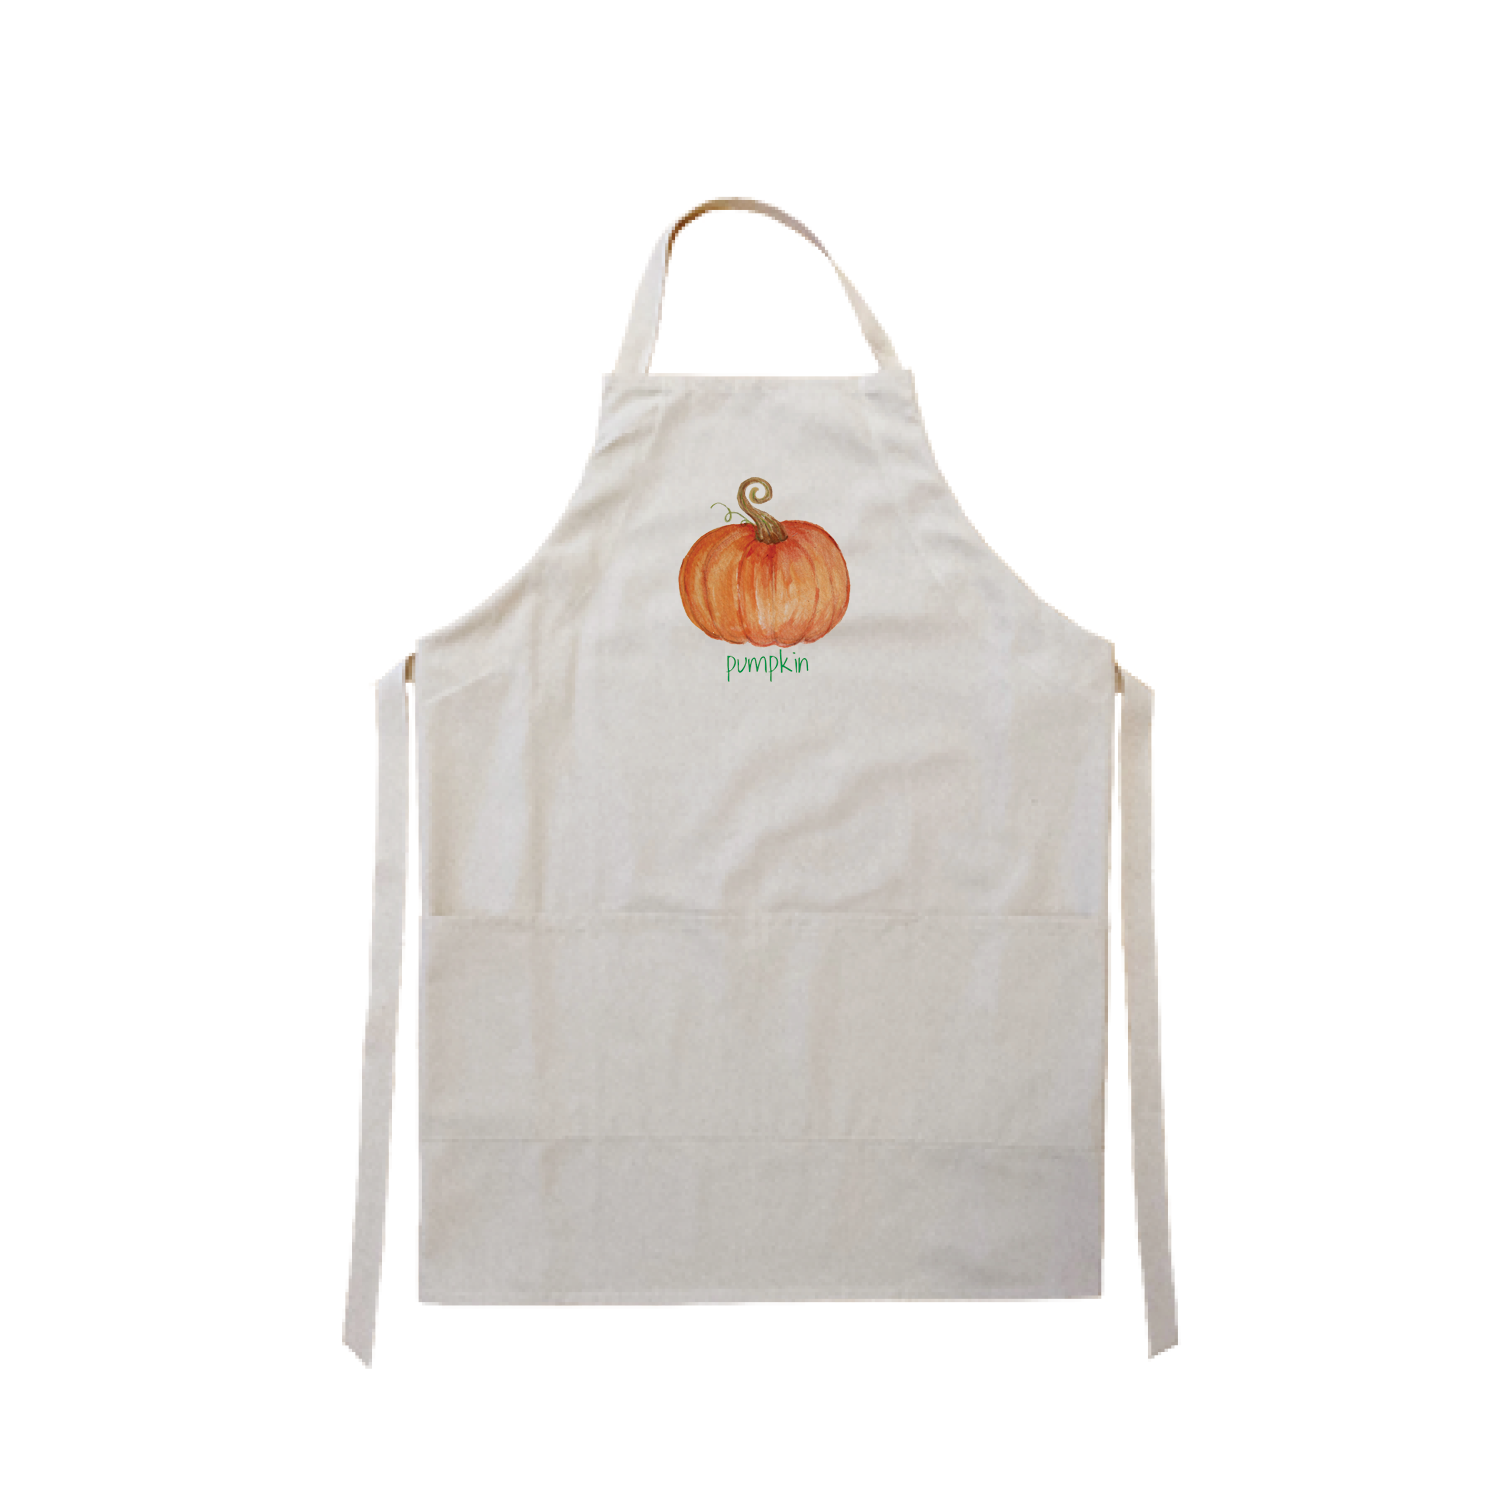 Pumpkin with pumpkin text apron